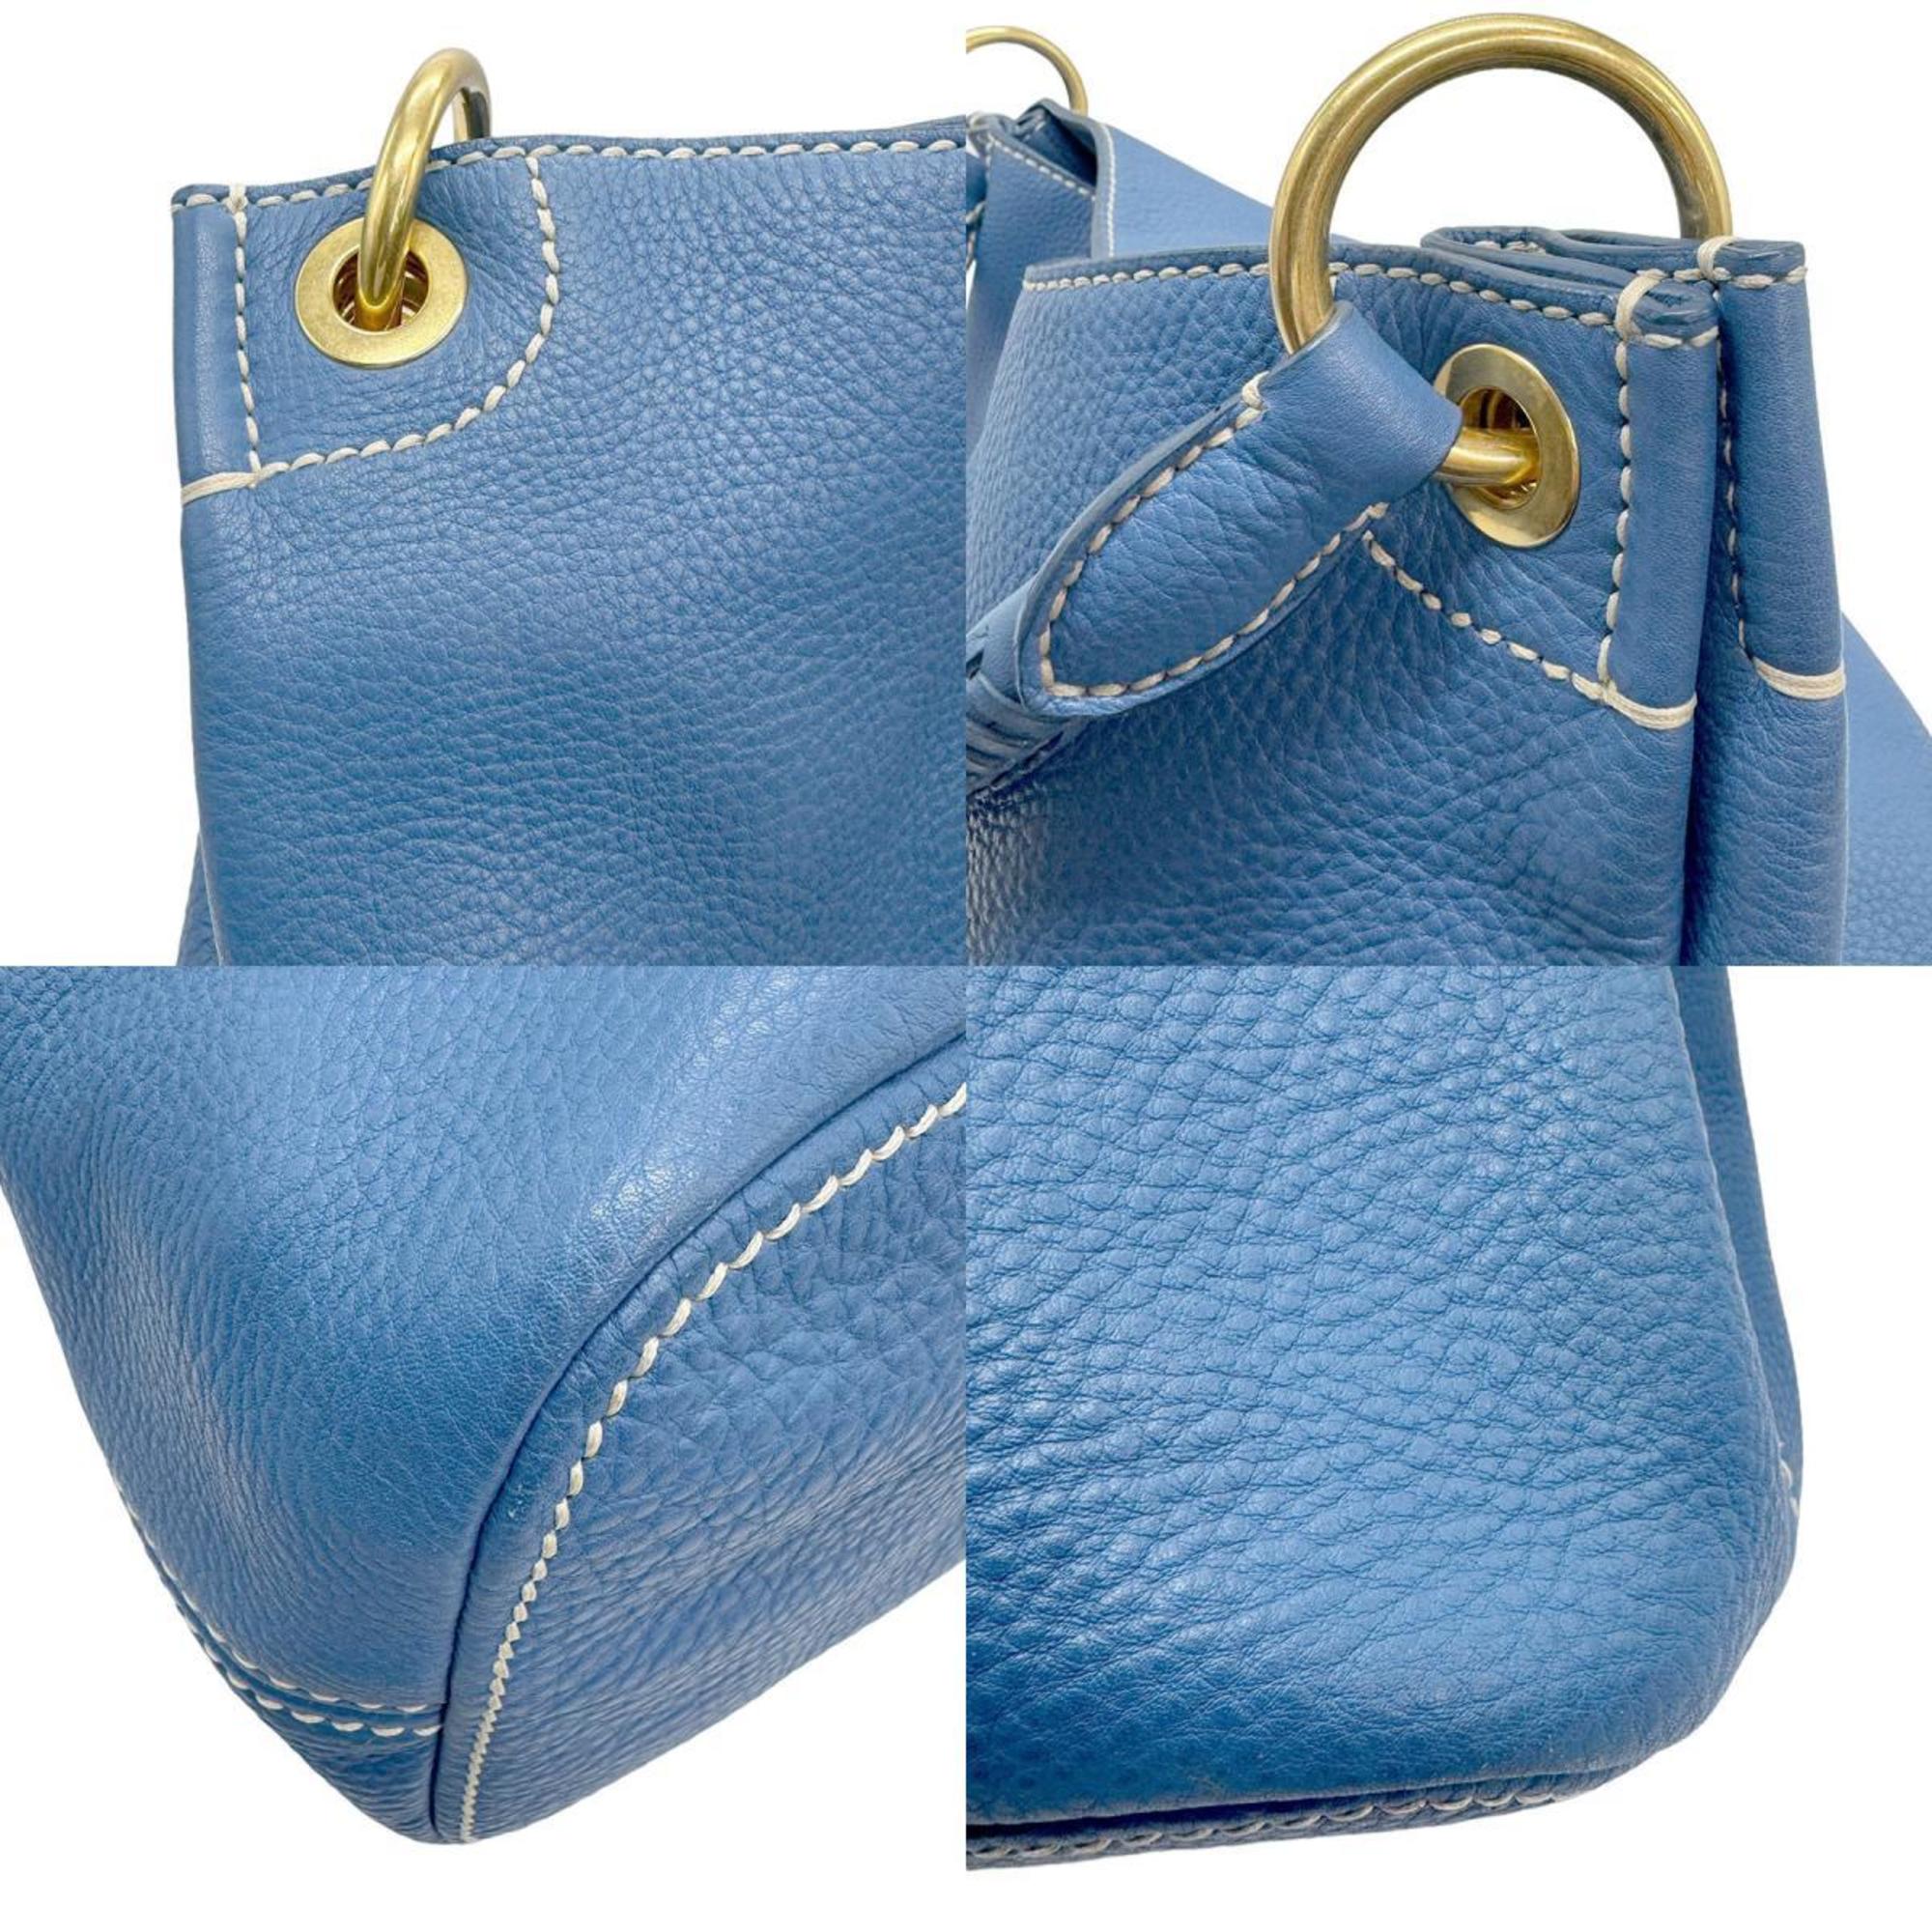 PRADA Shoulder Bag Leather Blue Women's z0910